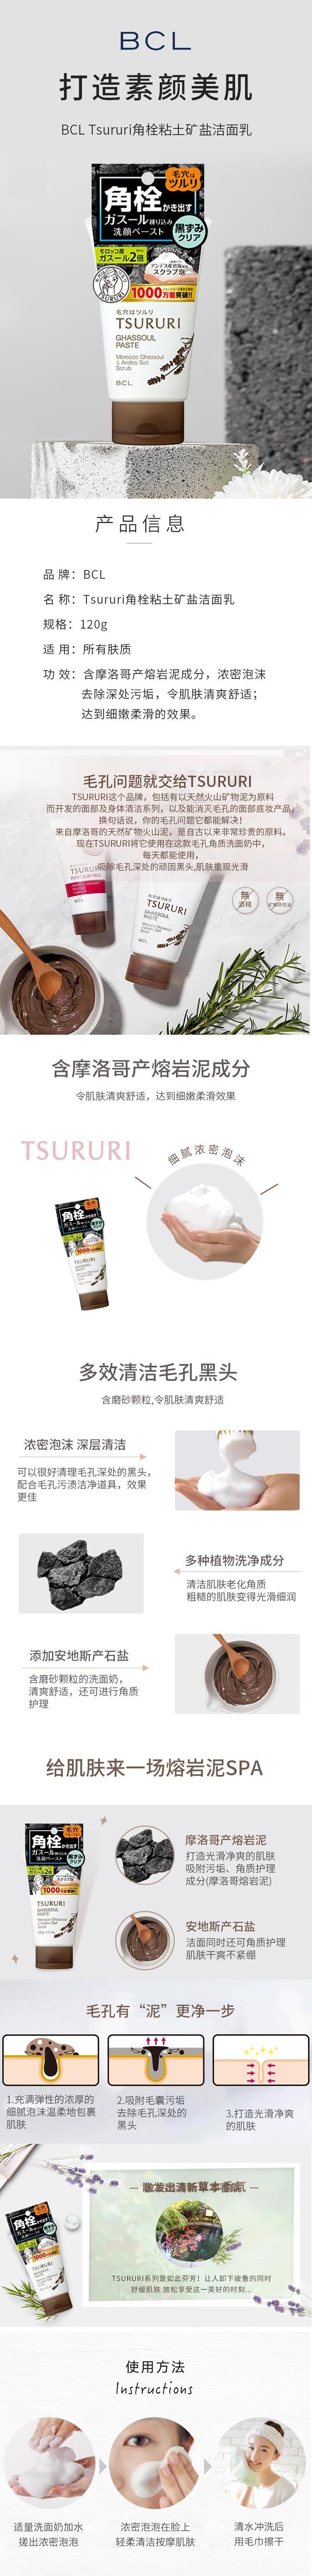 【日本直邮】BCL TSURURI角栓粘土矿盐洁面乳 清洁毛孔去黑头角质洗面奶 120g